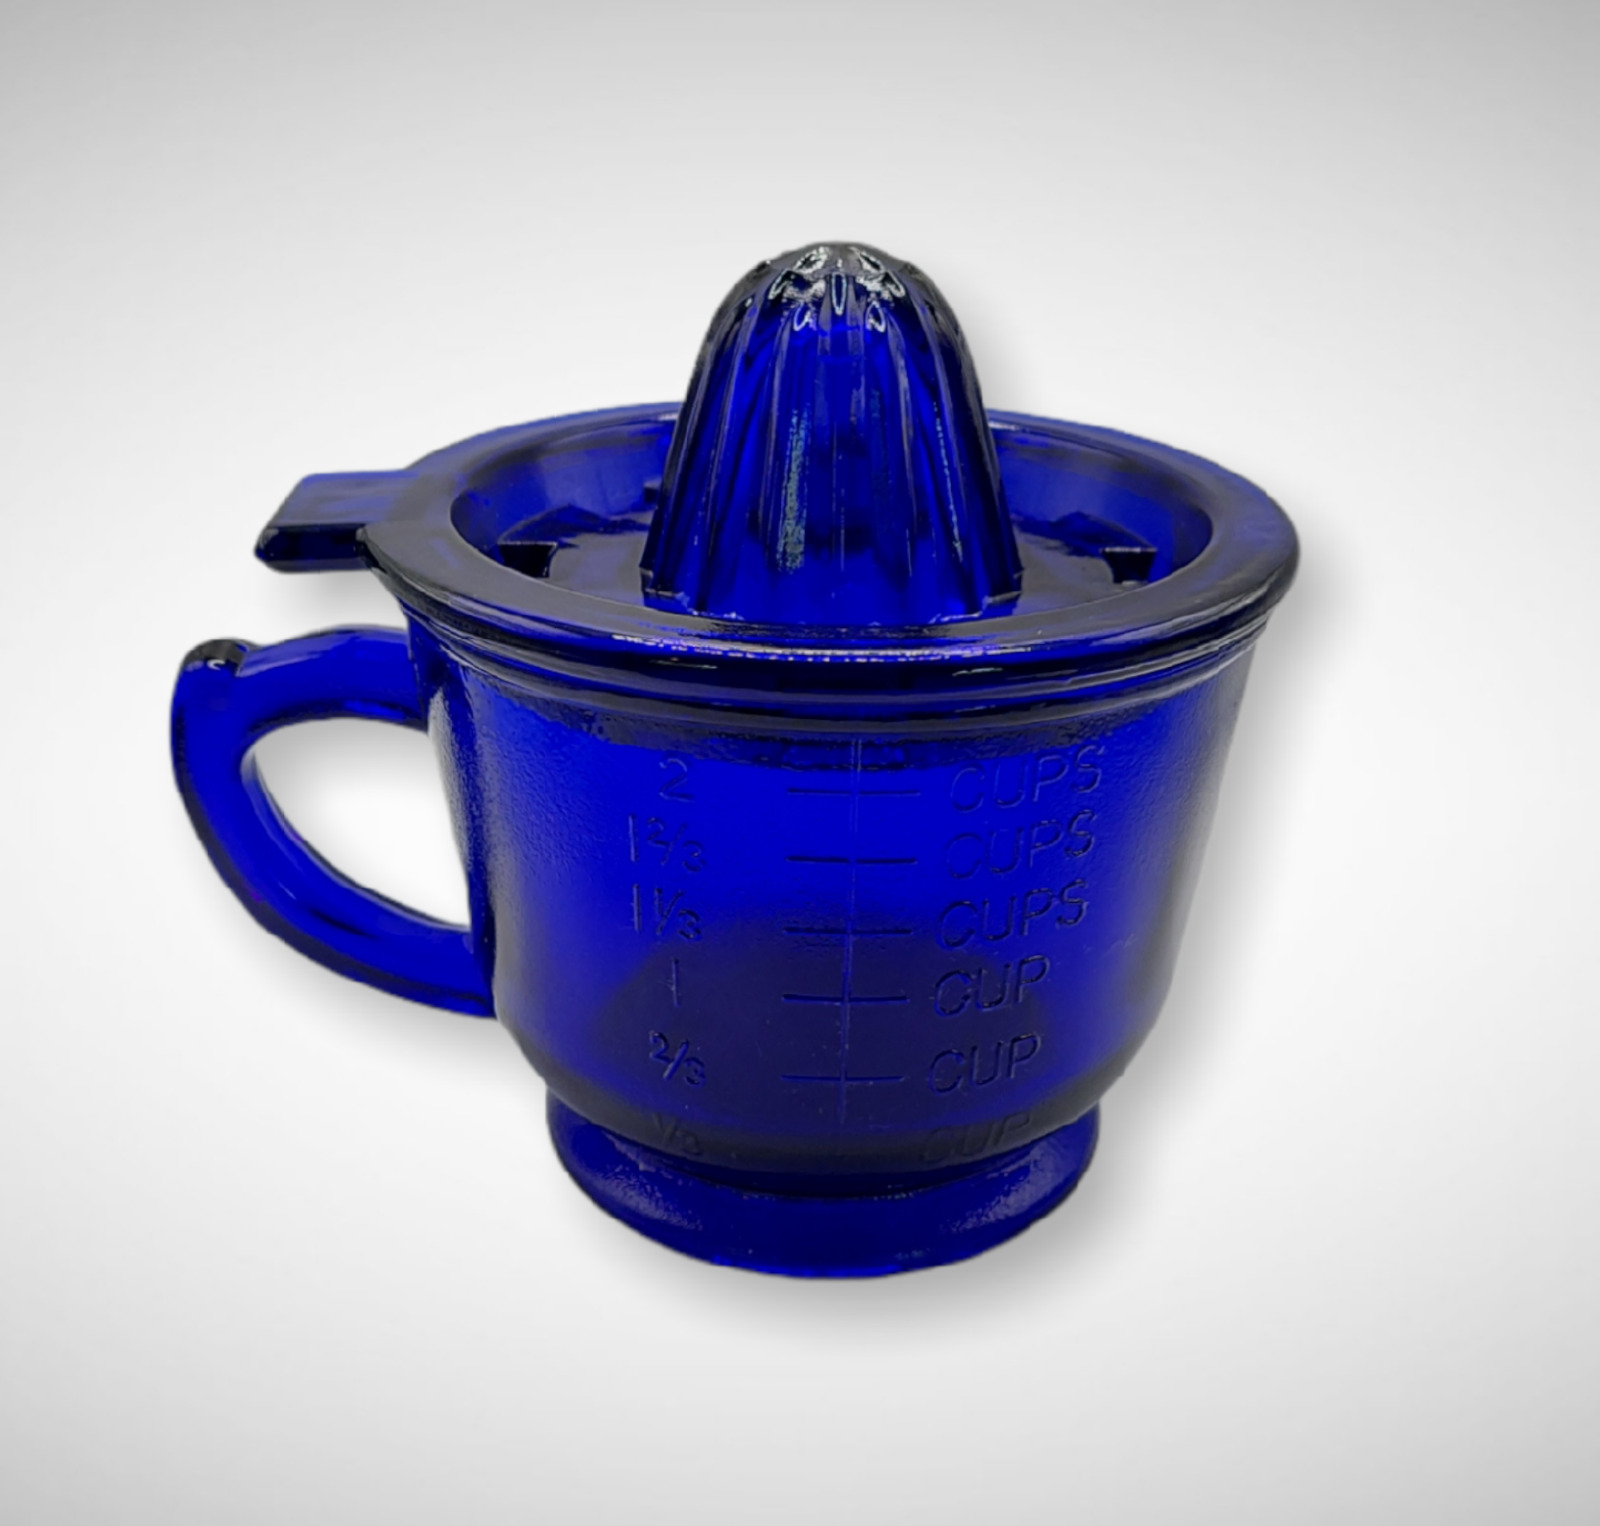 Cobalt Blue Juicer Reamer And 2 Cup Measuring Cup, Depression Style, Vintage